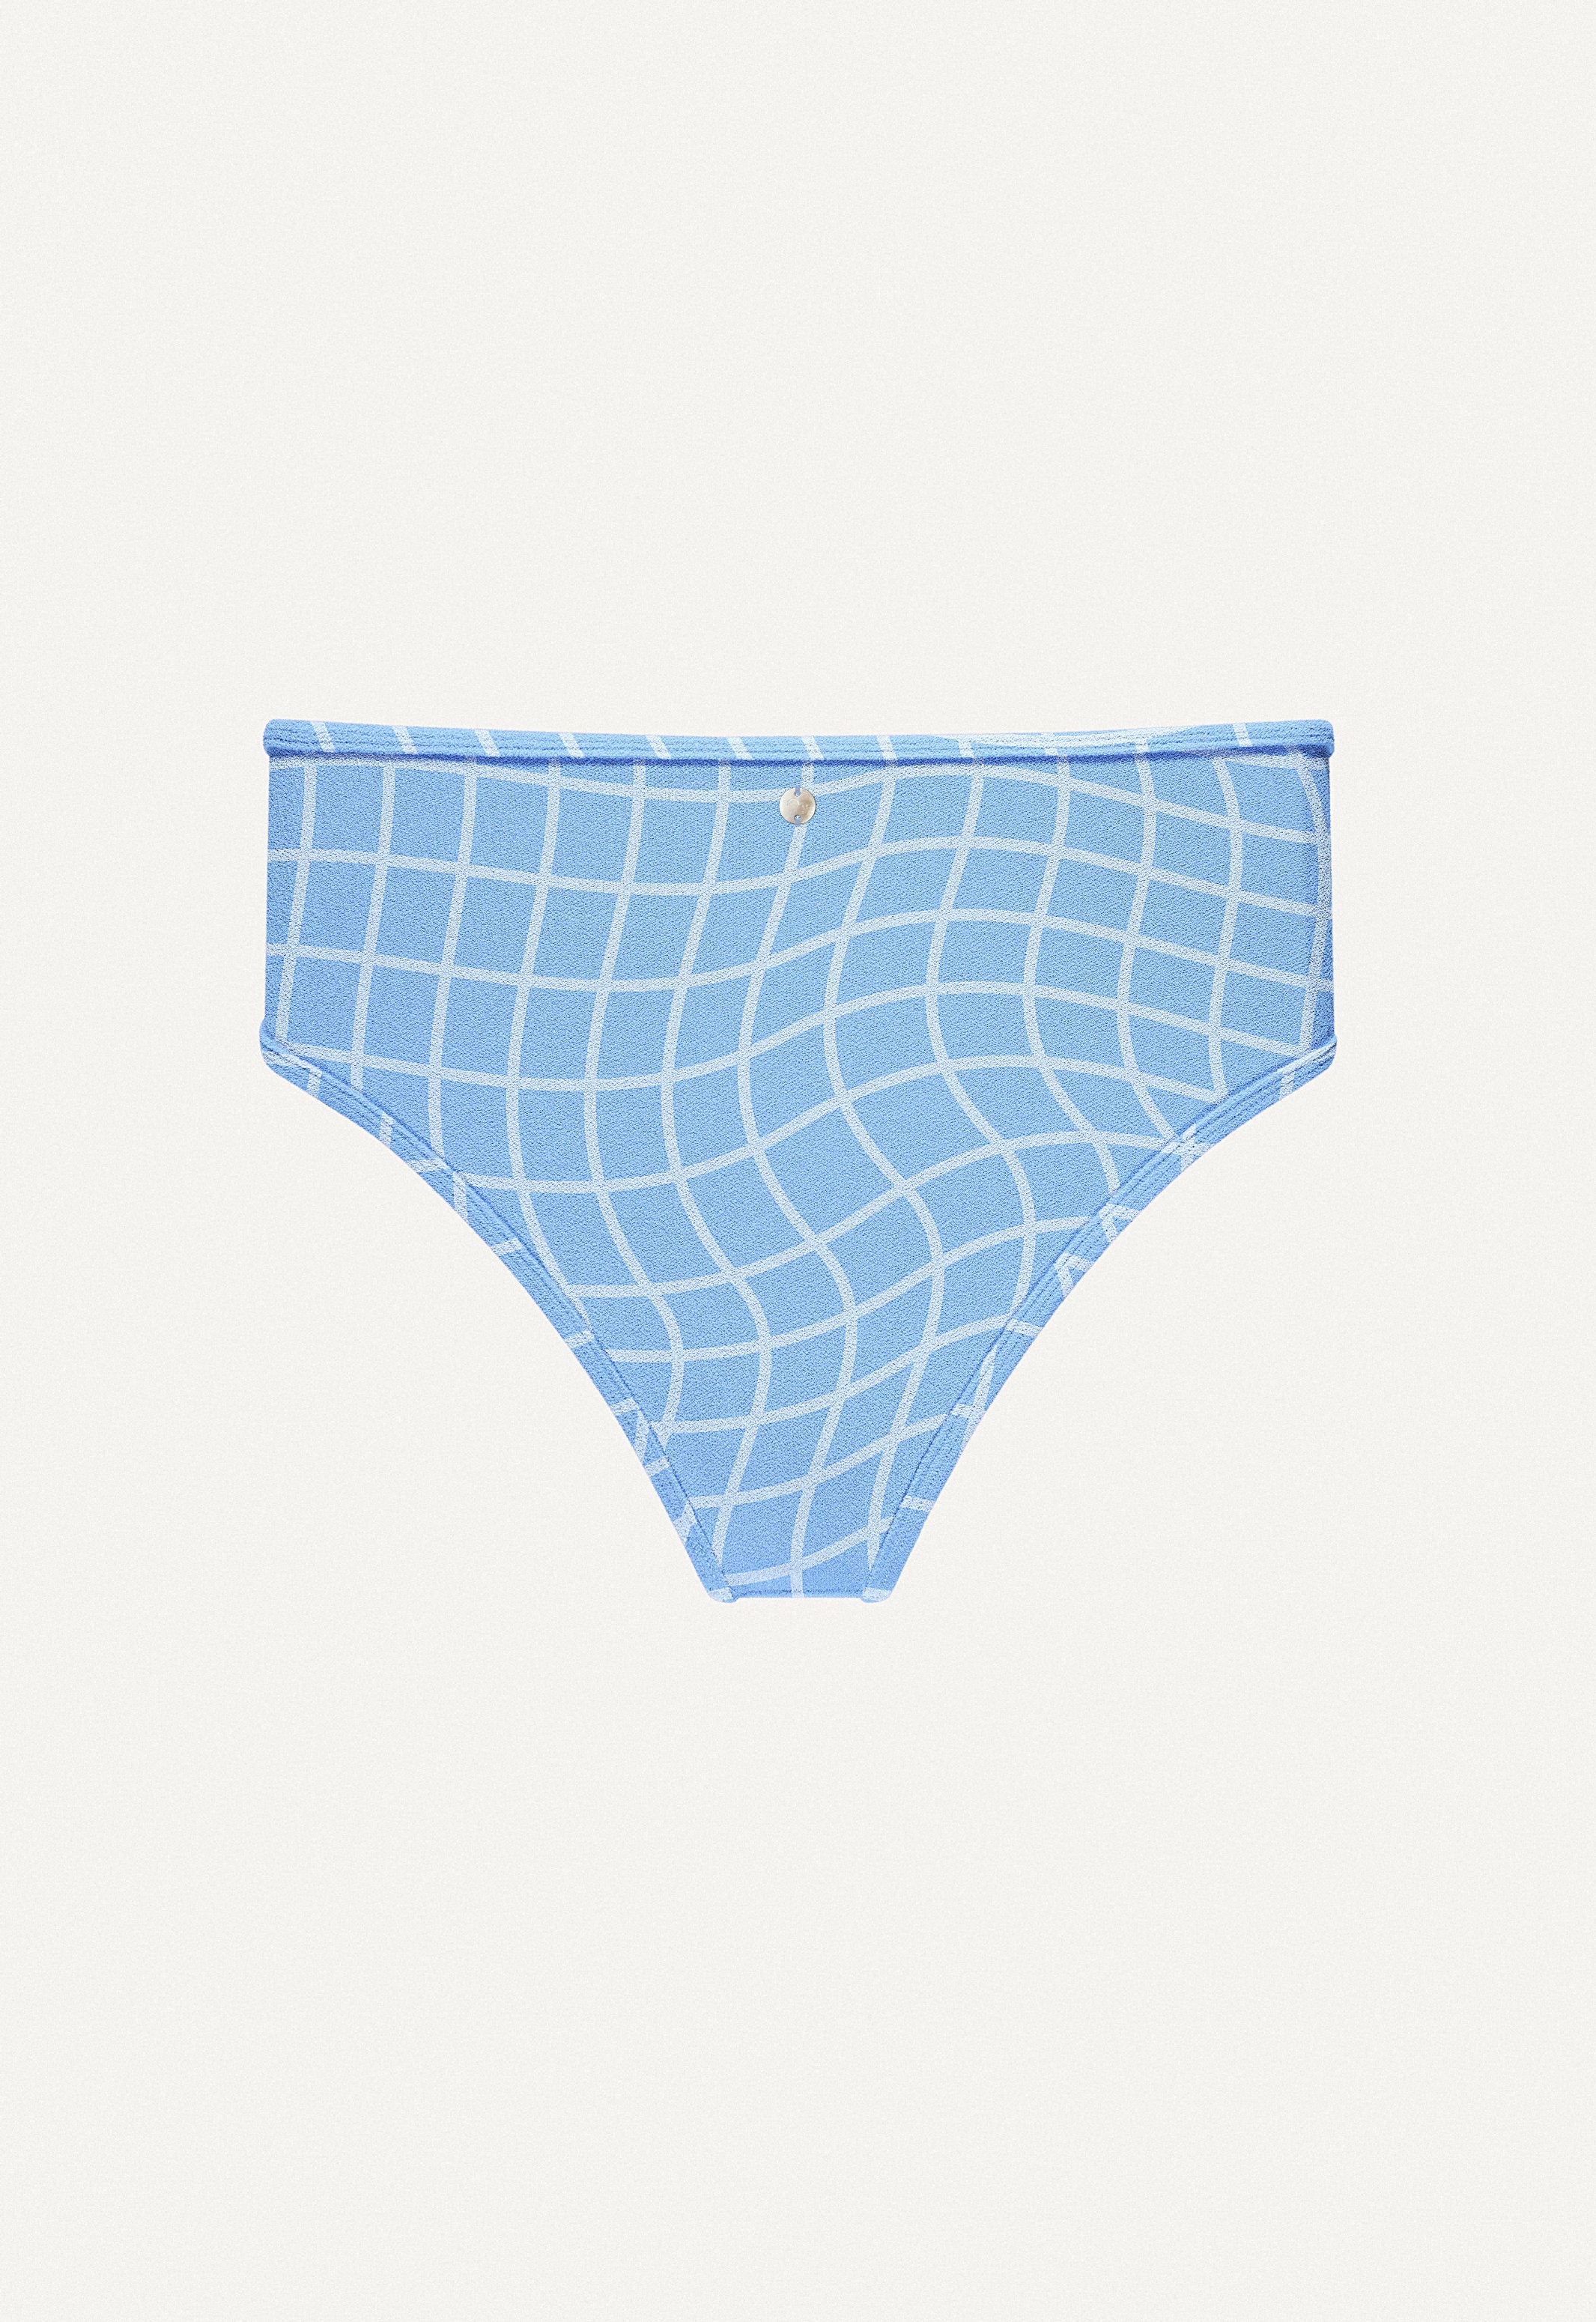 Bikini Bottom "Samun" in blue pool print terry